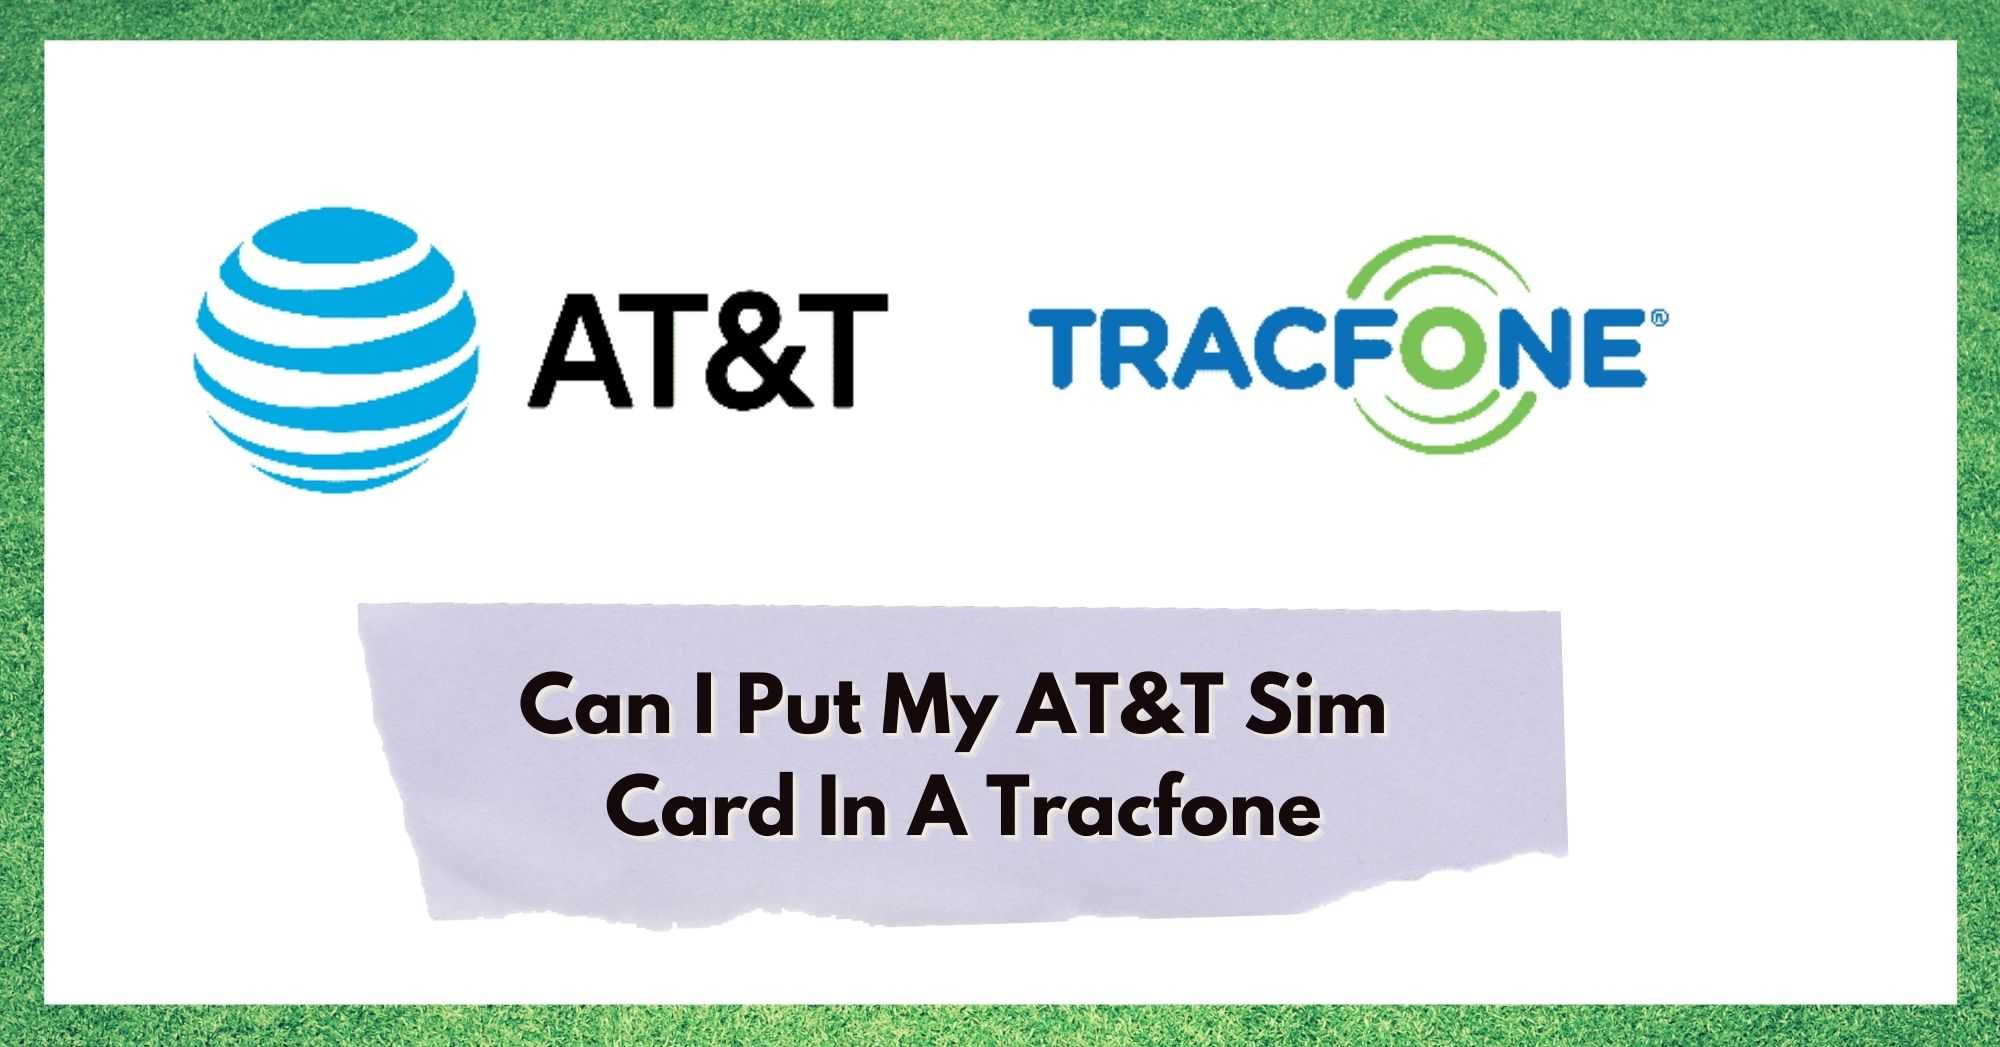 Mogu li staviti svoju AT&amp;T Sim karticu u Tracfone?